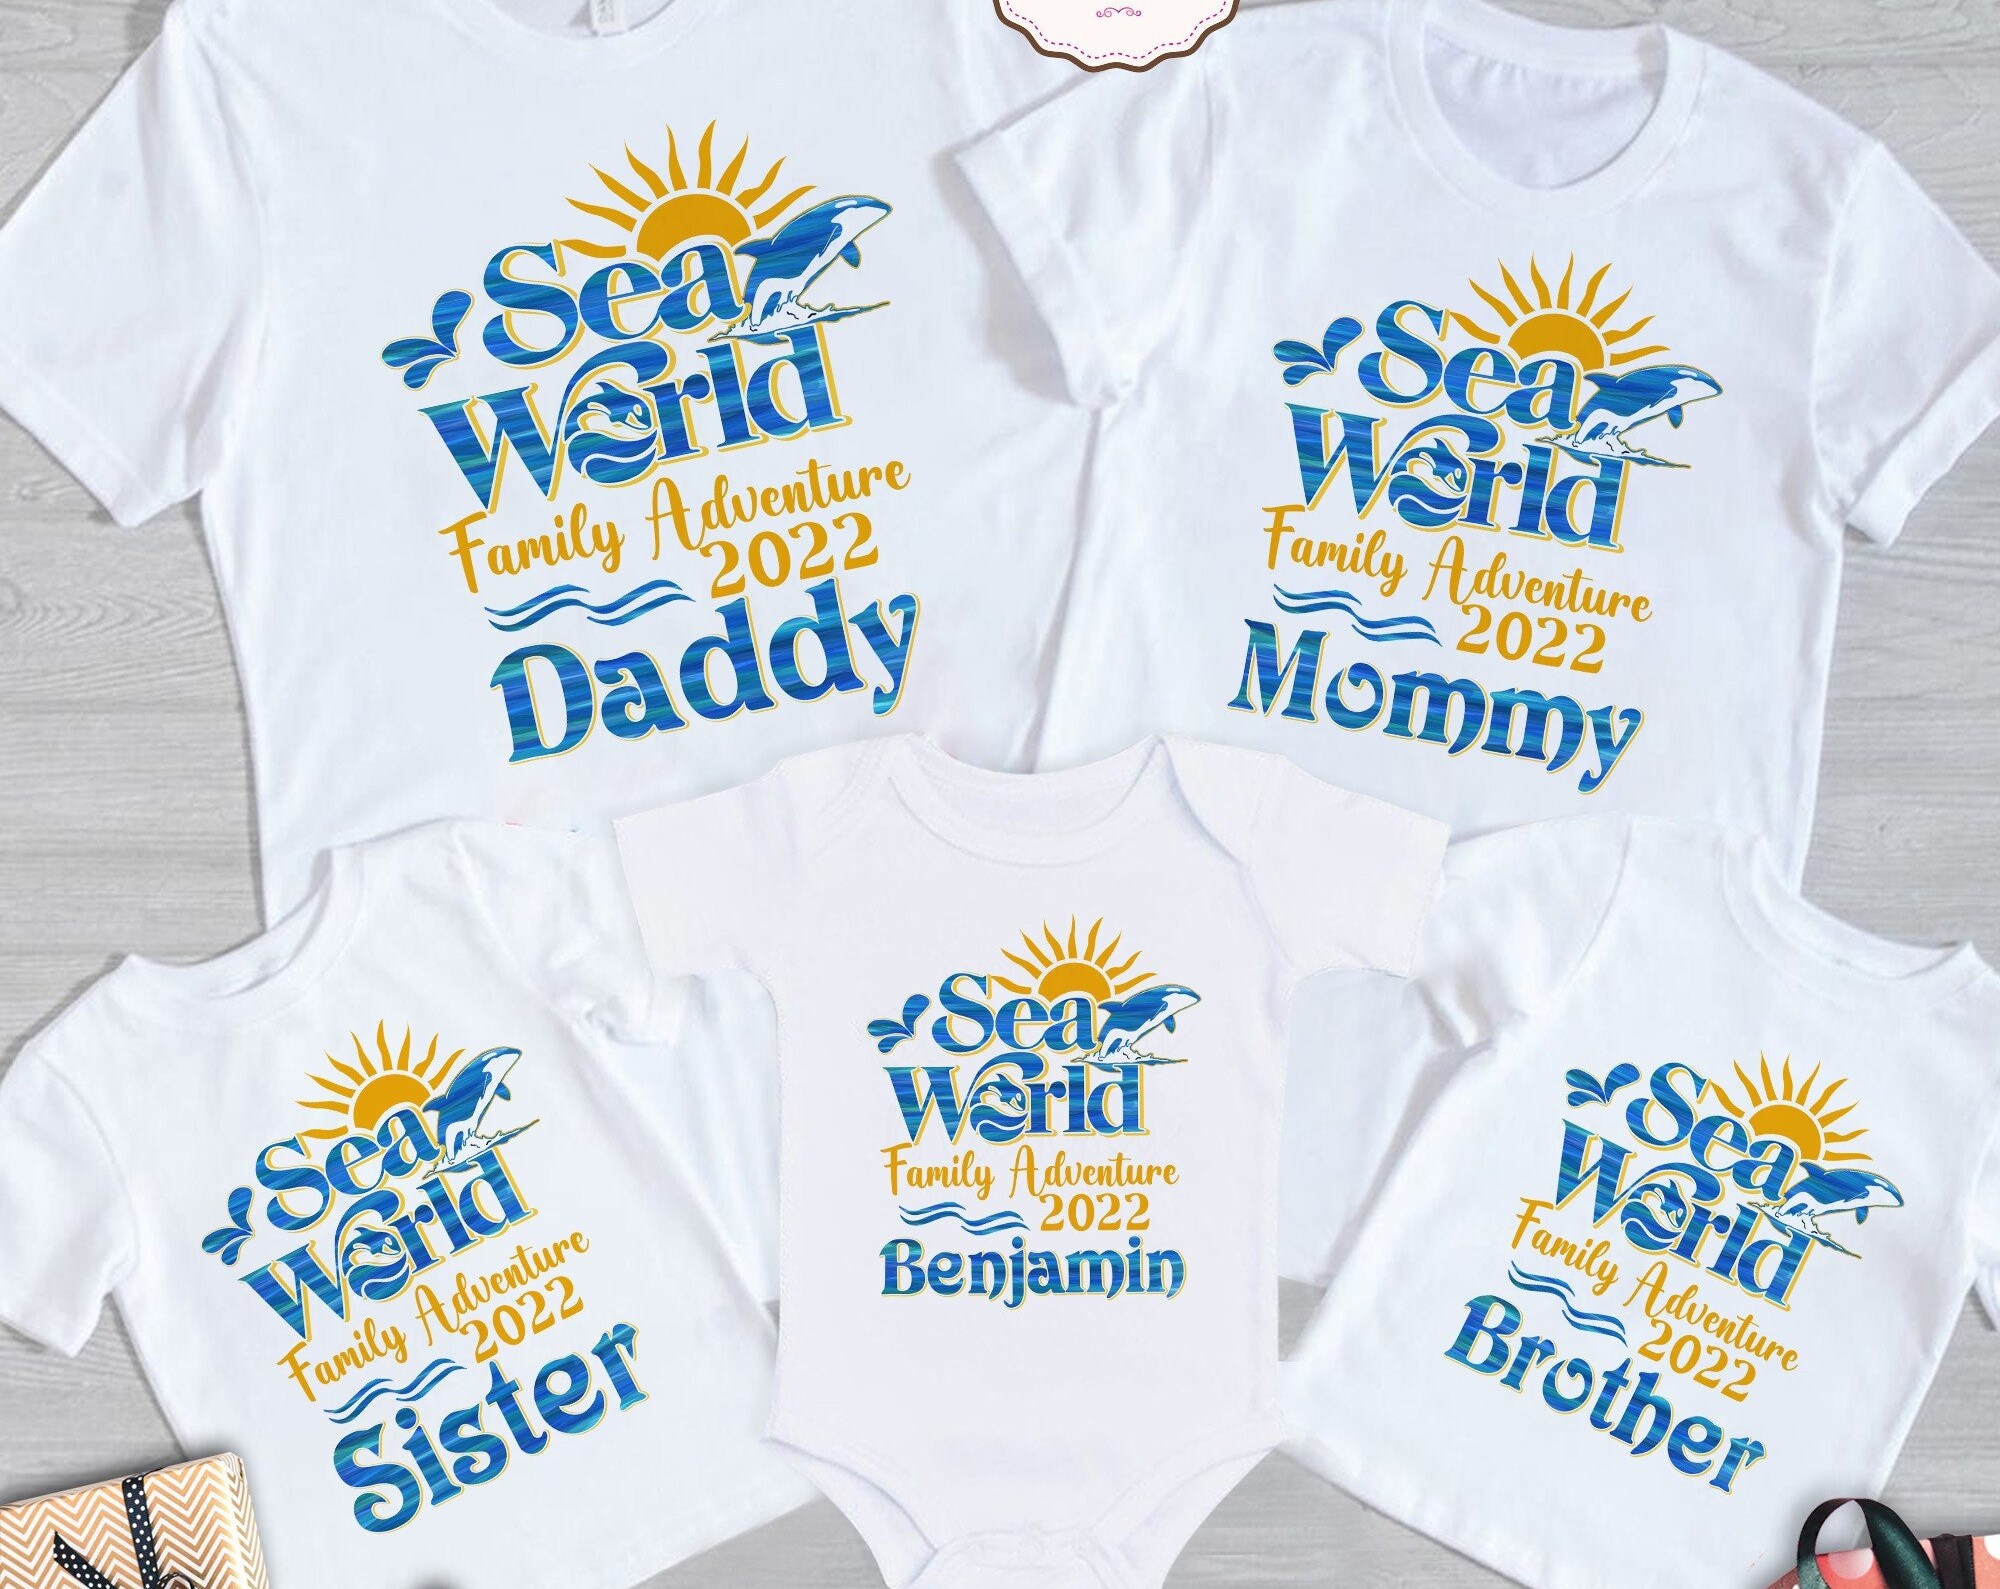 Sea World Family Adventure 2022 shirts, Sea World Family Shirt